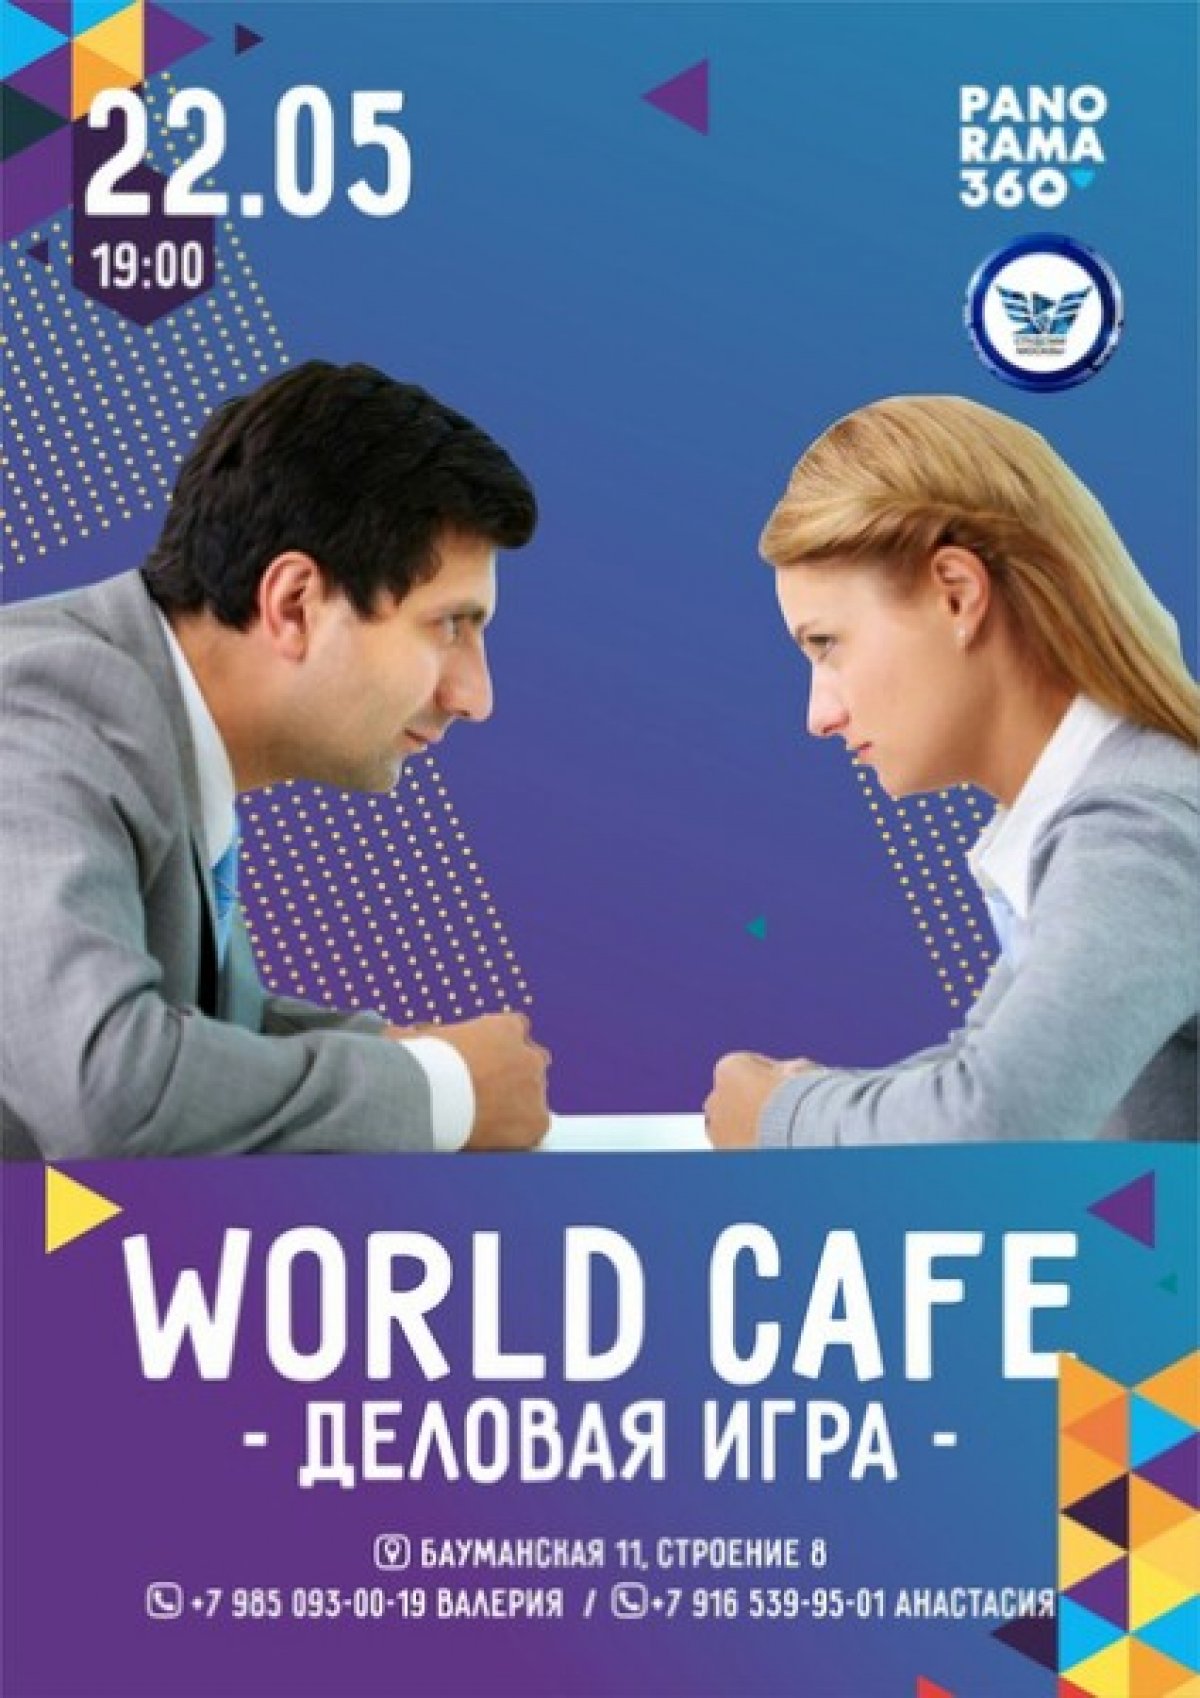 Уже 22 МАЯ приглашает всех на масштабное World cafe - деловую игру 🔥